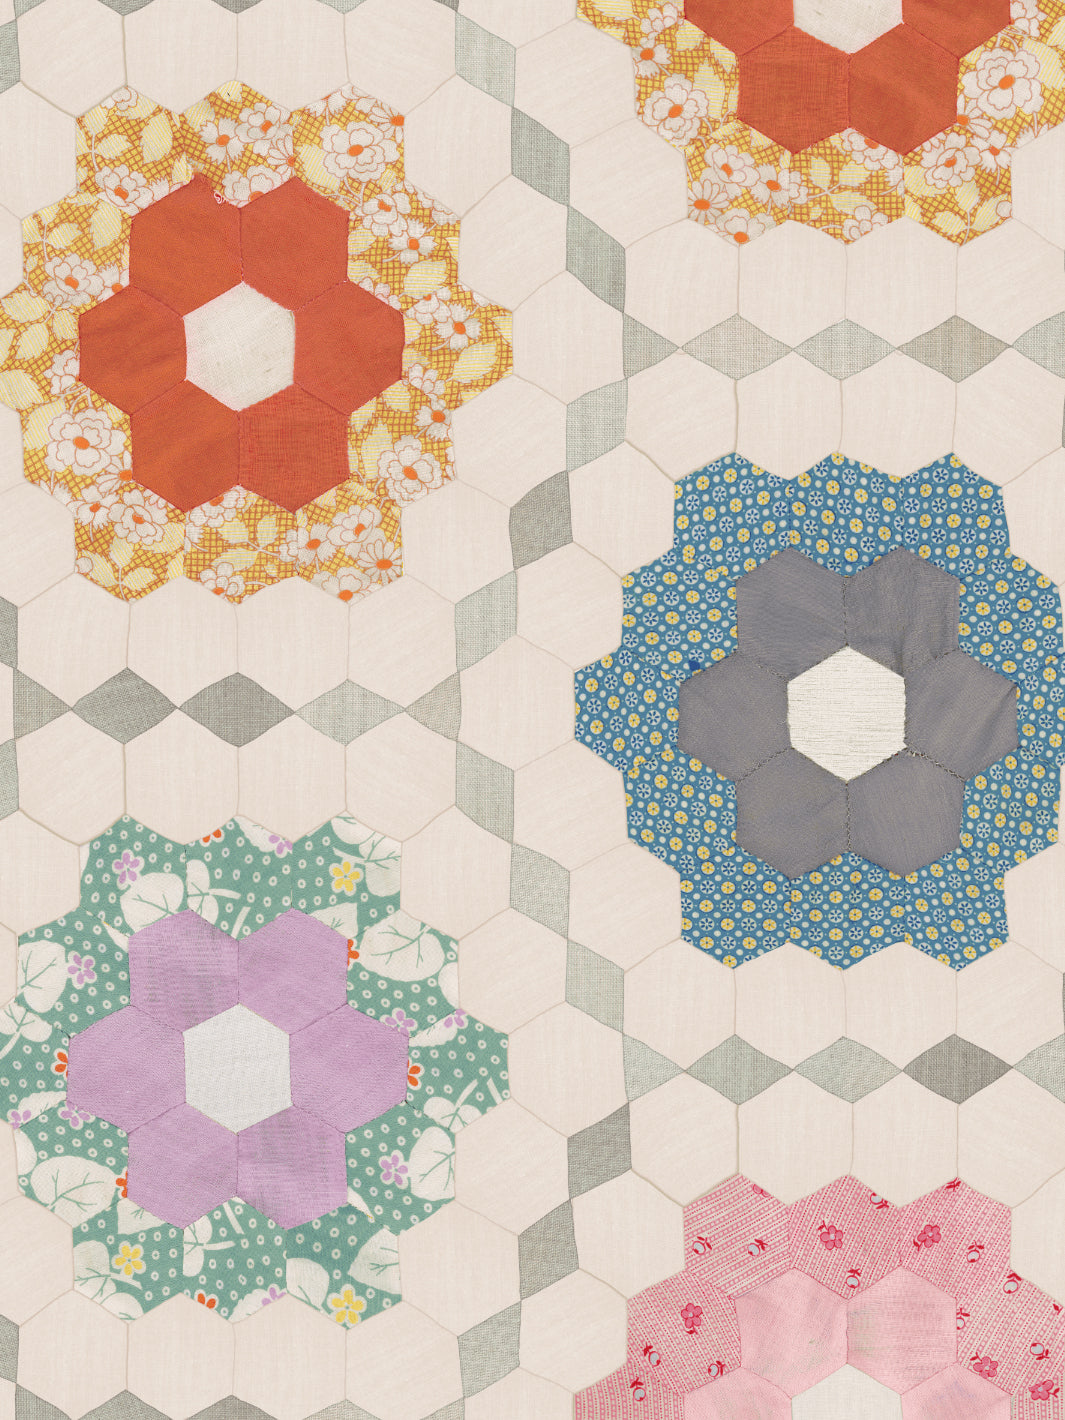 'Pinwheel Quilt' Wallpaper by Chris Benz - Multi